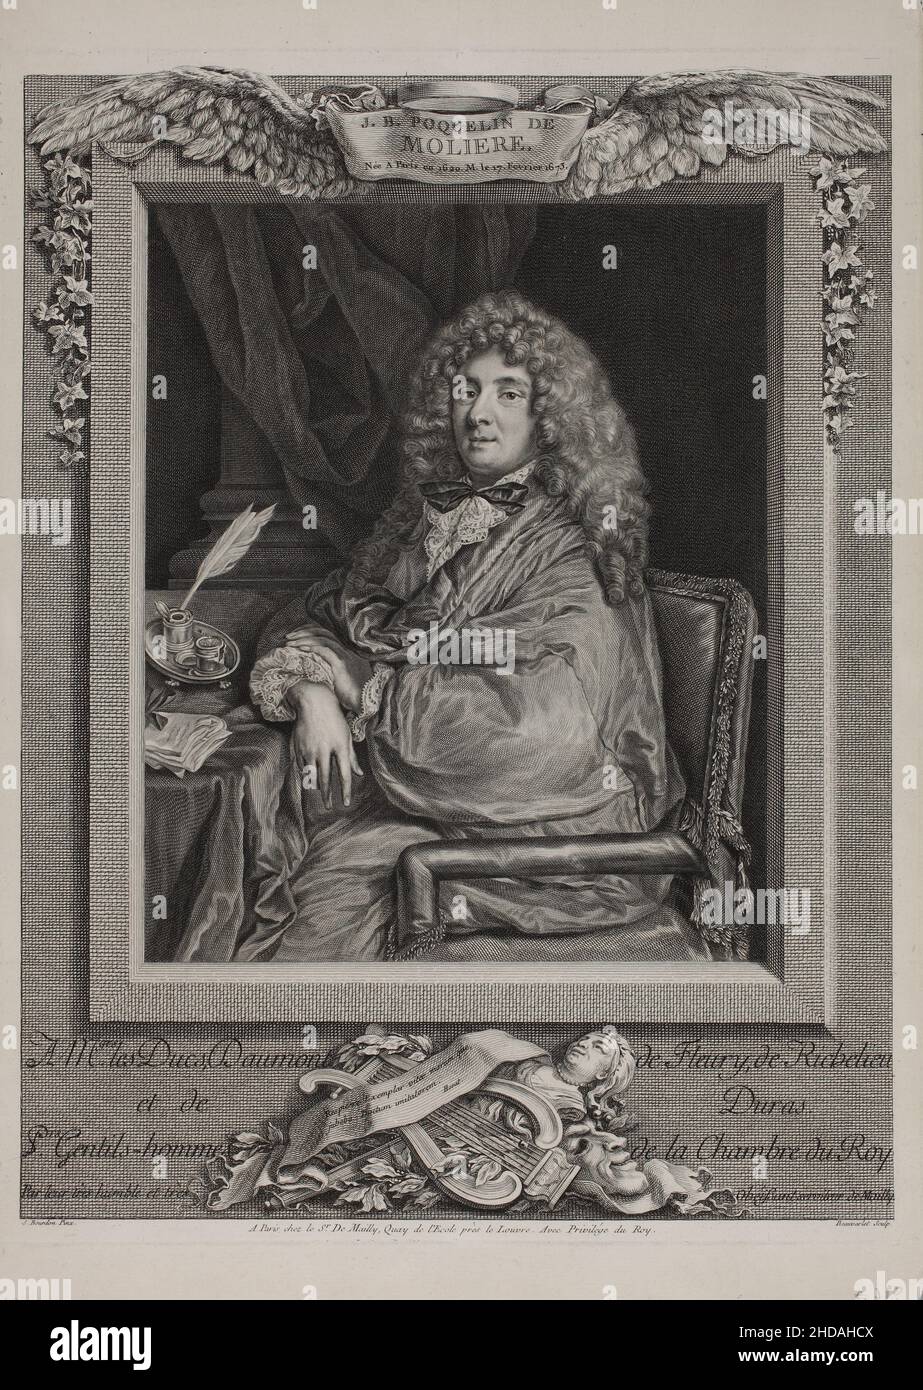 Portrait de Molière.1774 Jean-Baptiste Poquelin (1622 – 1673), connu sous le nom de Molière, est un dramaturge, acteur et poète français, largement rega Banque D'Images